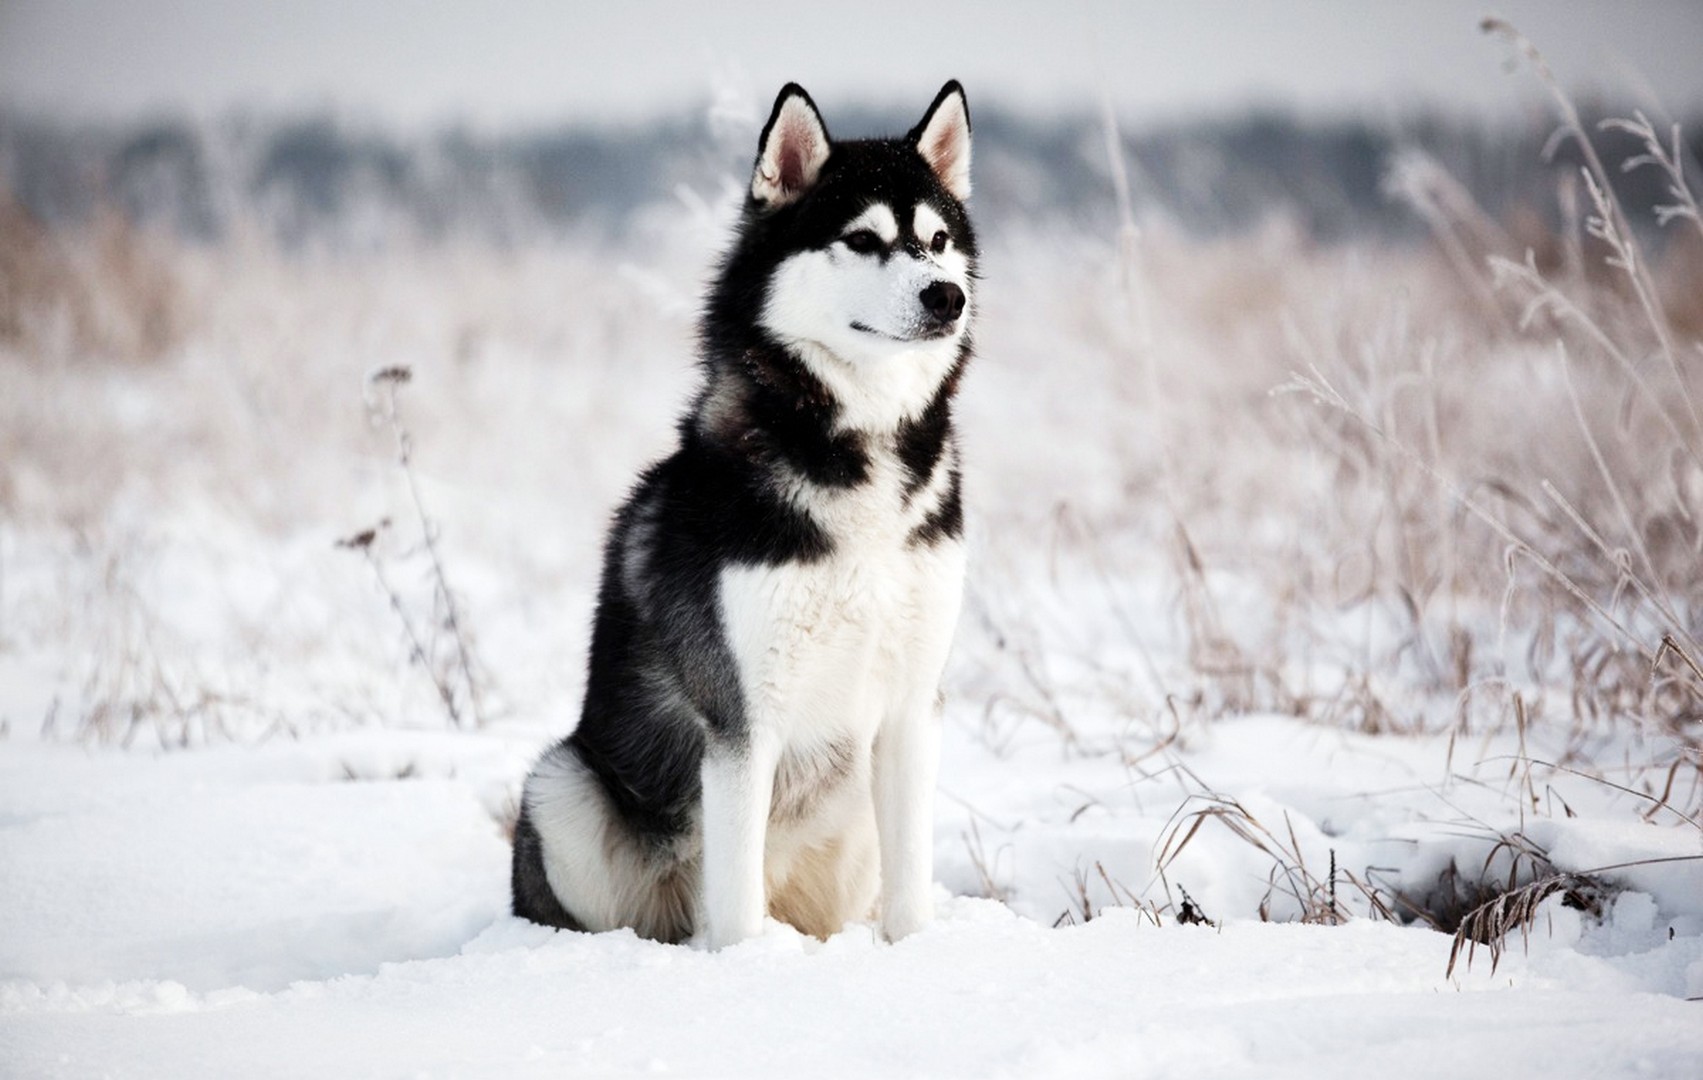 ハスキーシベリアーノ壁紙,犬,シベリアンハスキー,サハリンハスキー,アラスカのマラミュート,カナダのエスキモー犬